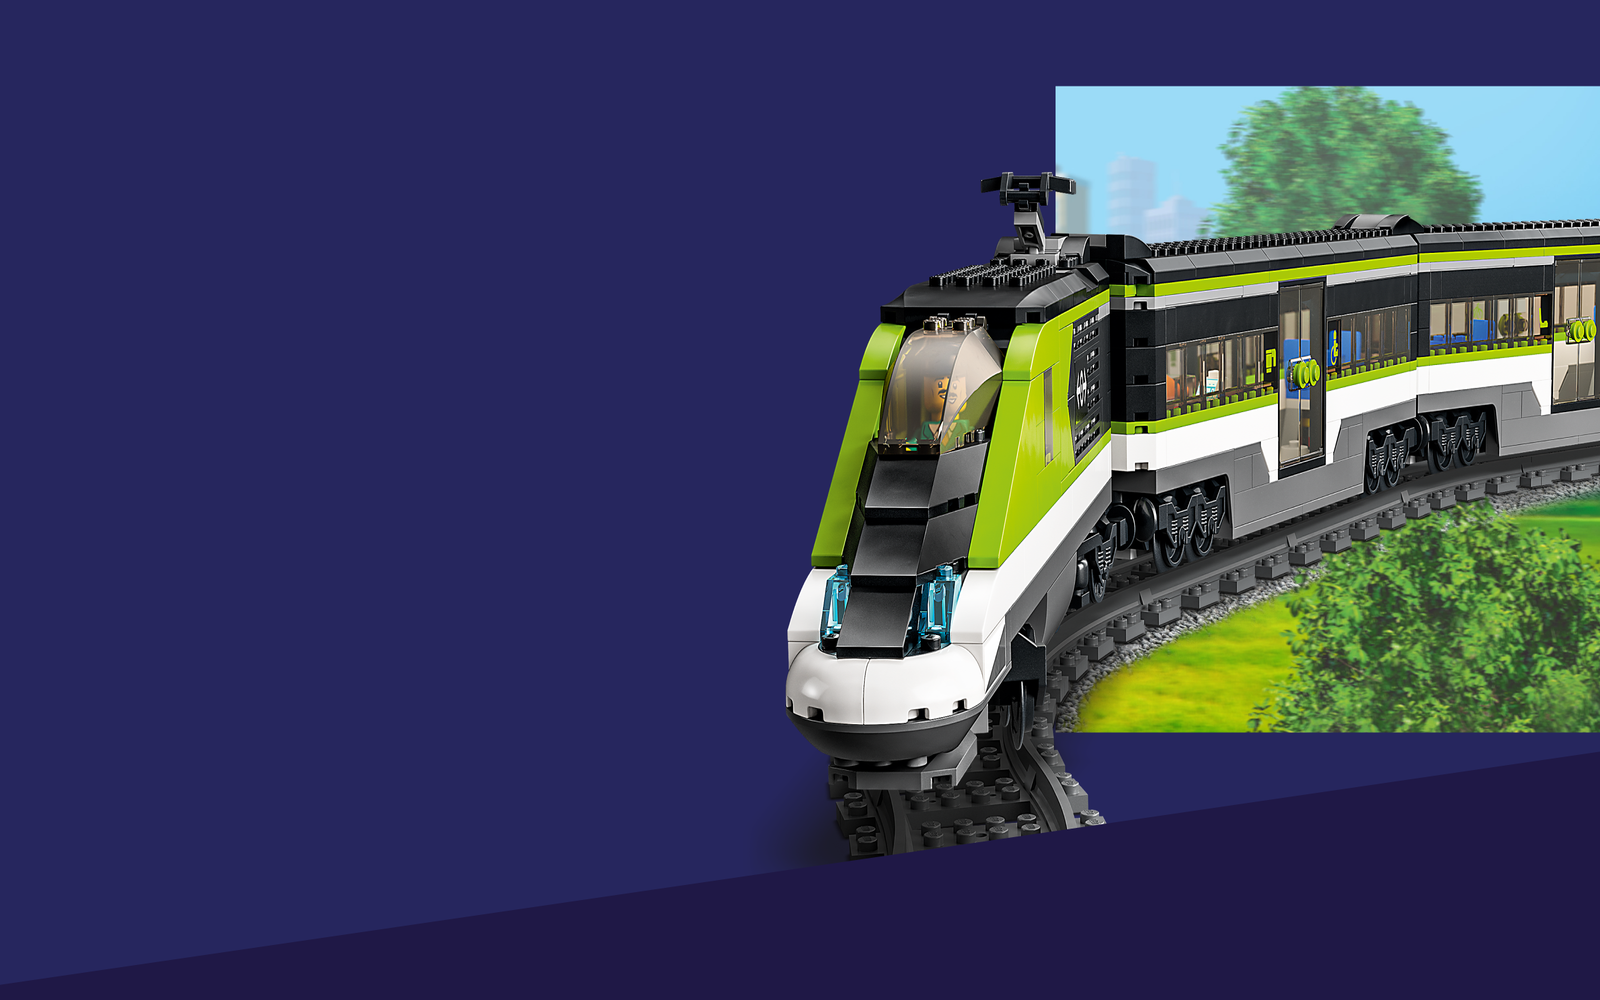 Laboratorium lus kiespijn LEGO® City Treinen en rails | Officiële LEGO® winkel NL